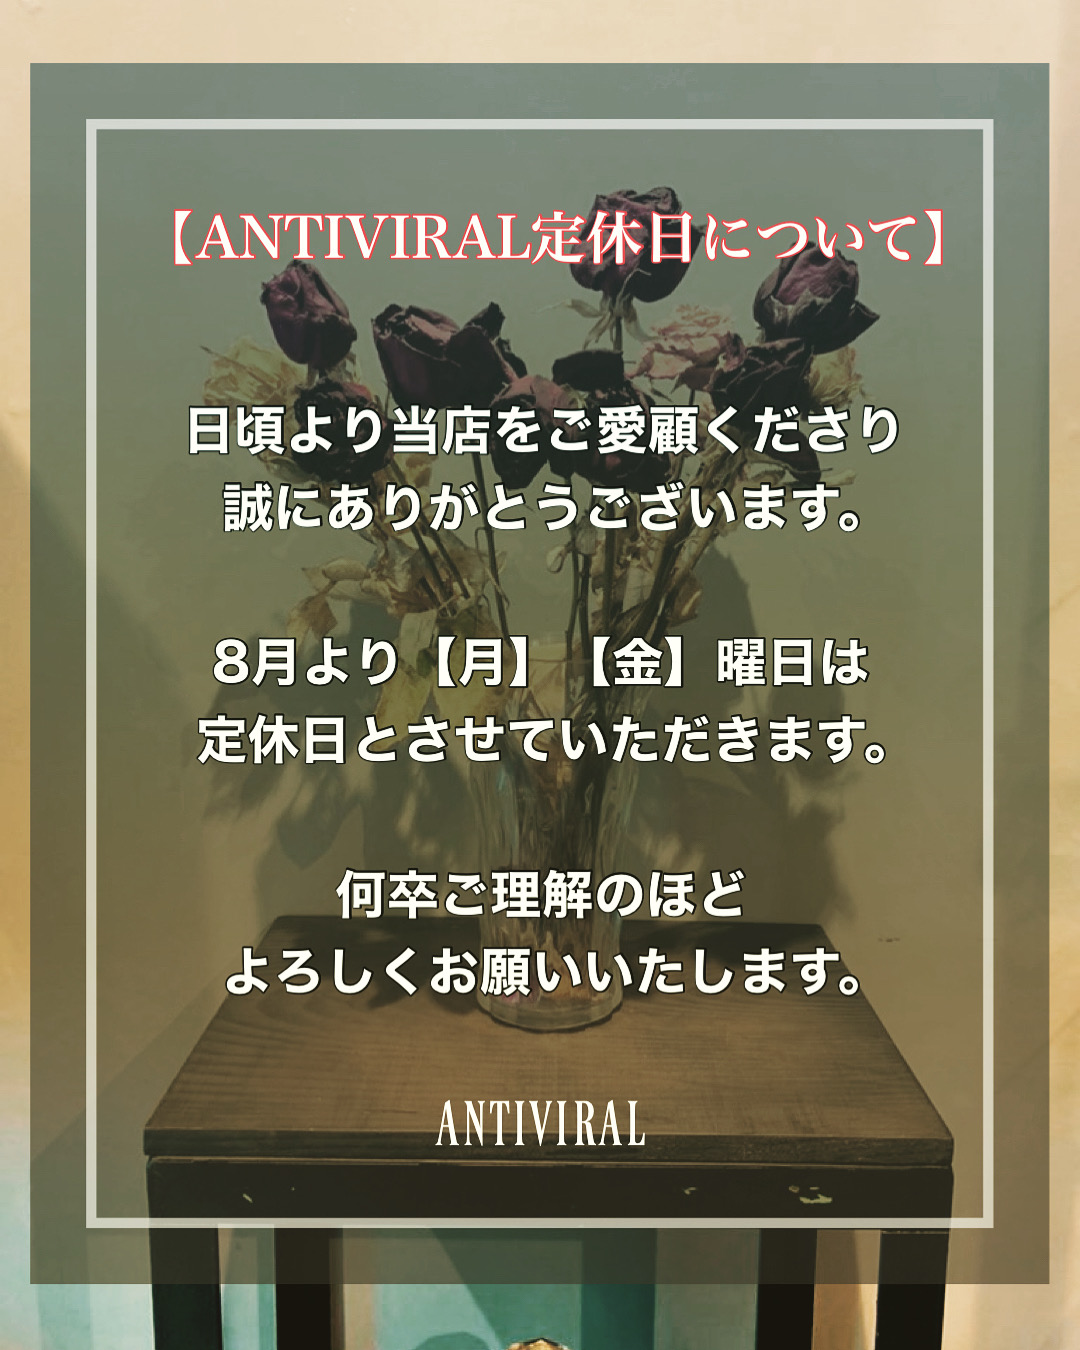 【ANTIVIRAL実店舗の定休日について】